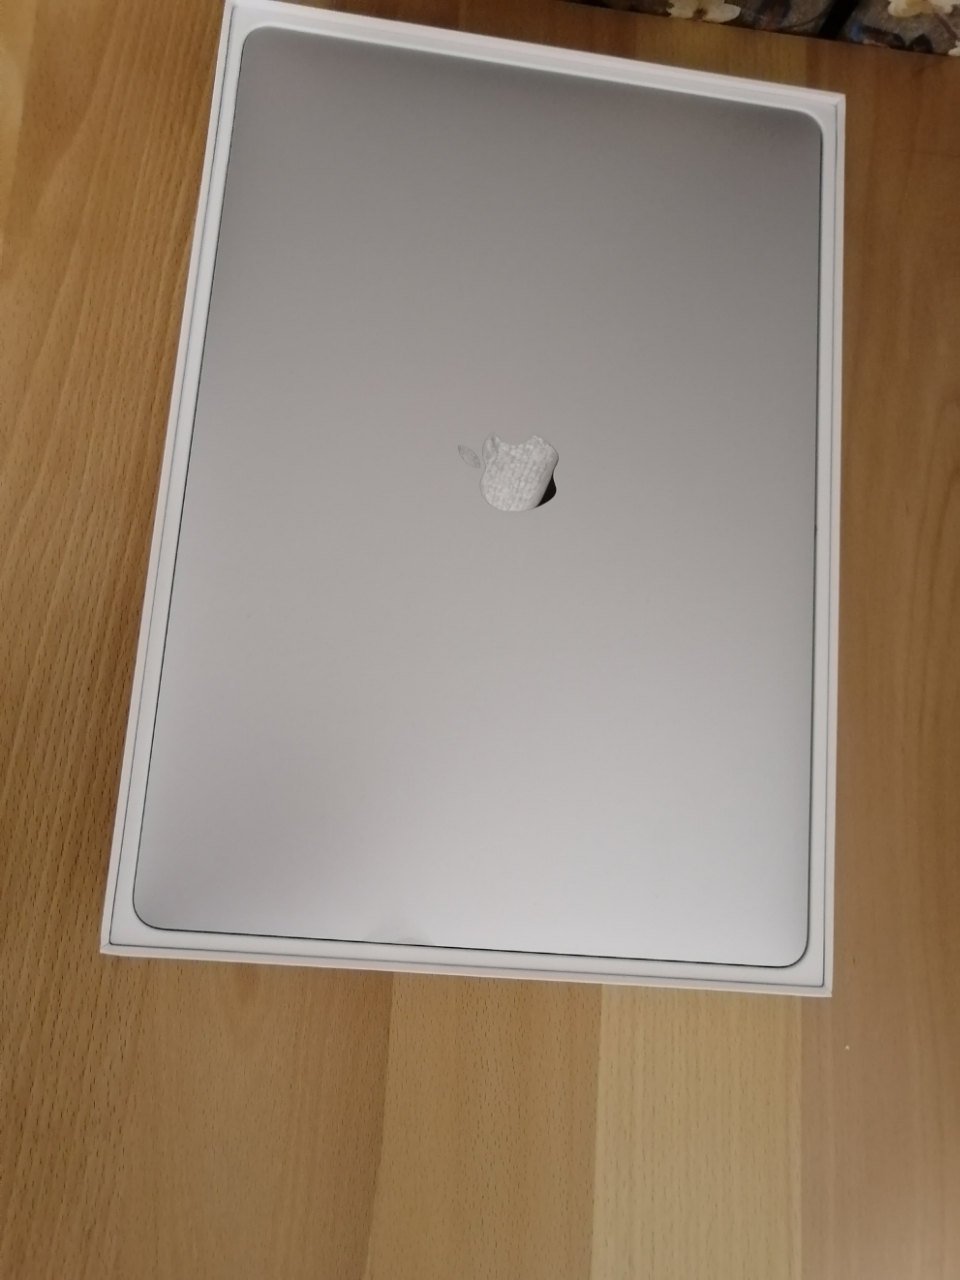 2018款 apple苹果笔记本 macbook pro 15.